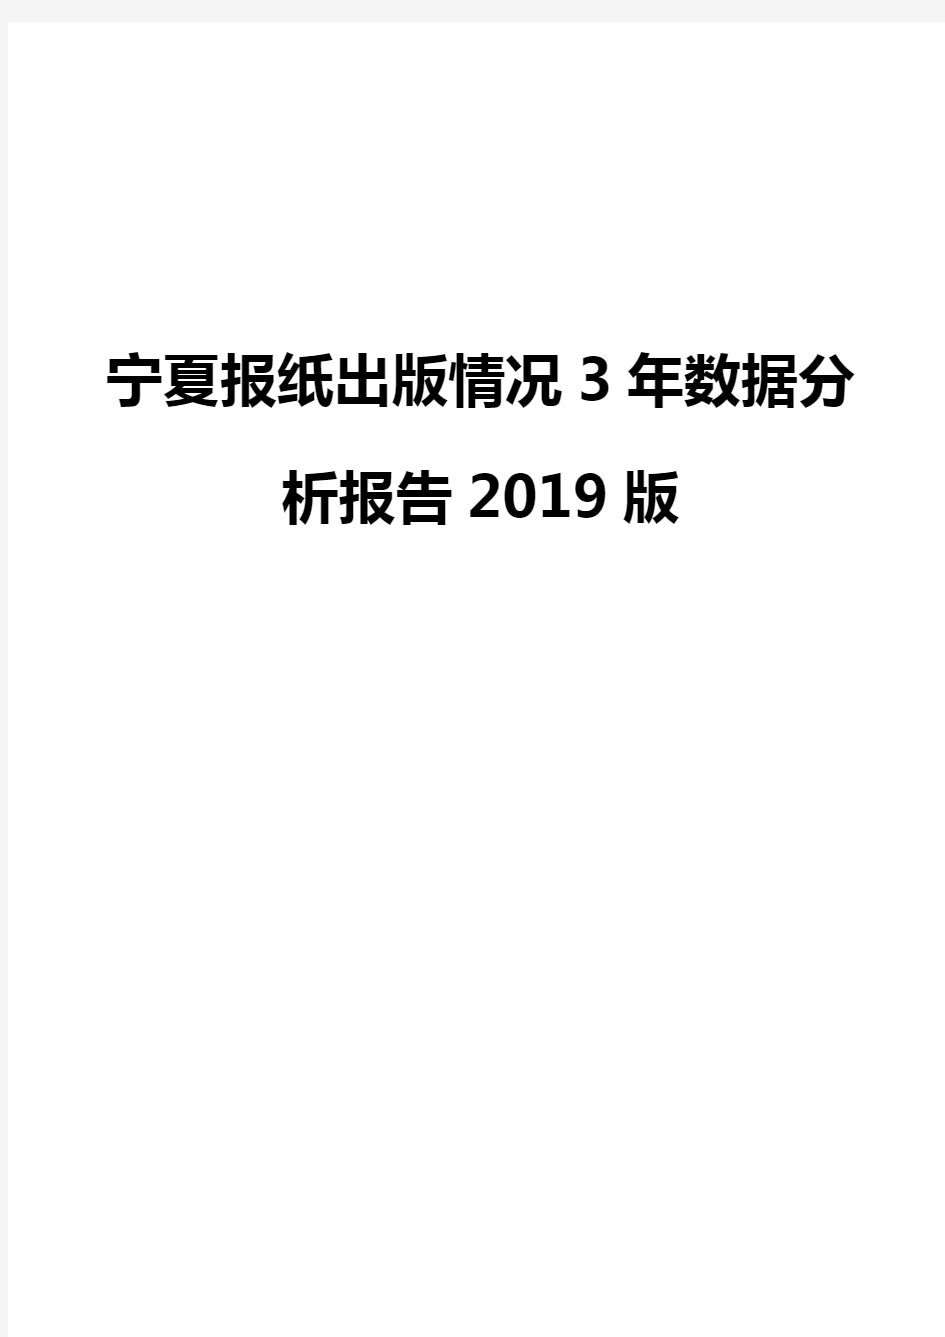 宁夏报纸出版情况3年数据分析报告2019版